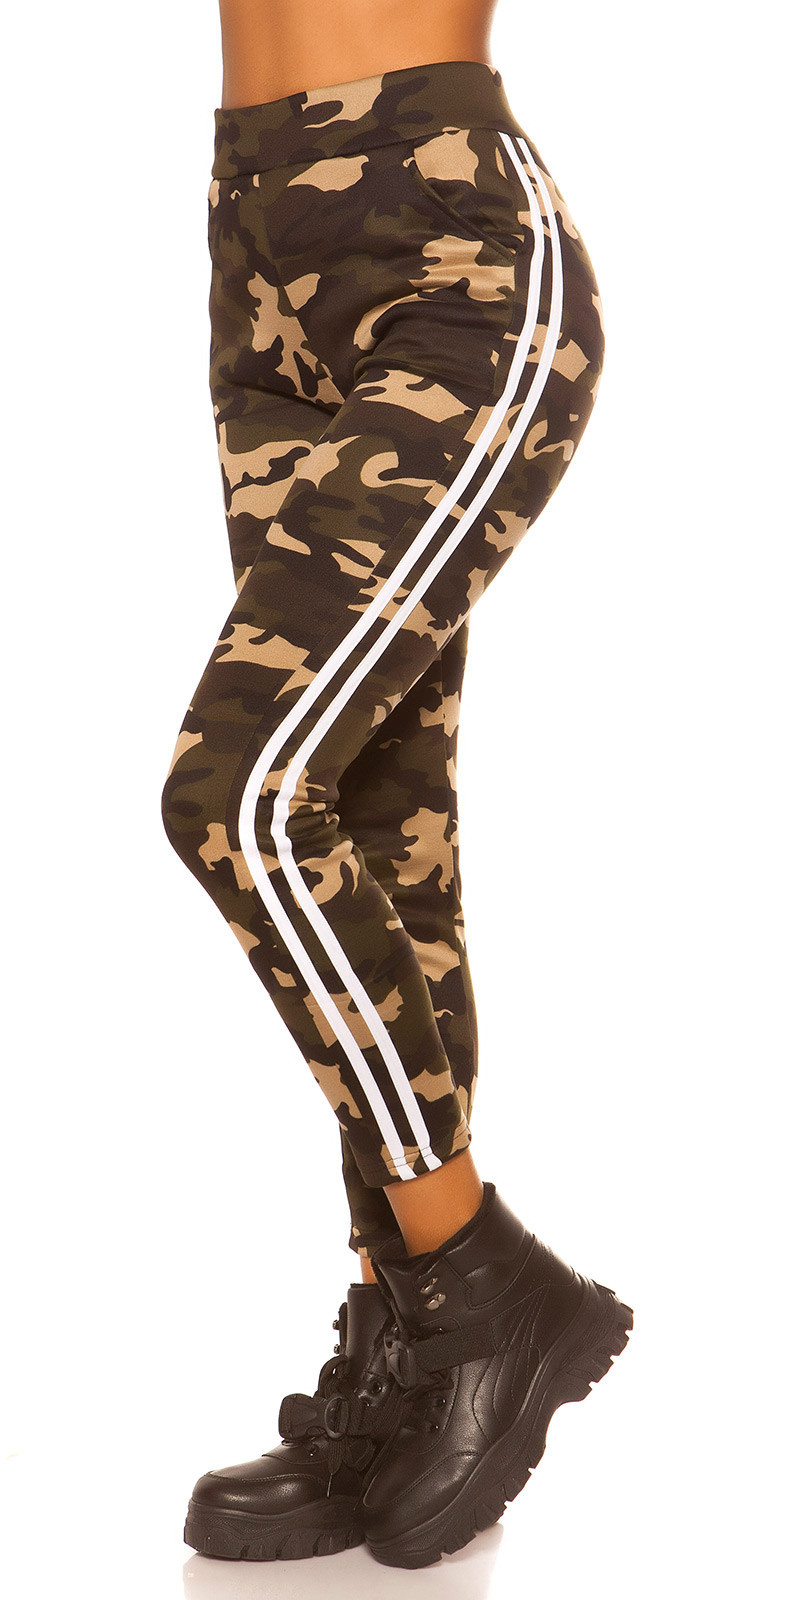 Trendy camouflage leggings met contrast streep wit